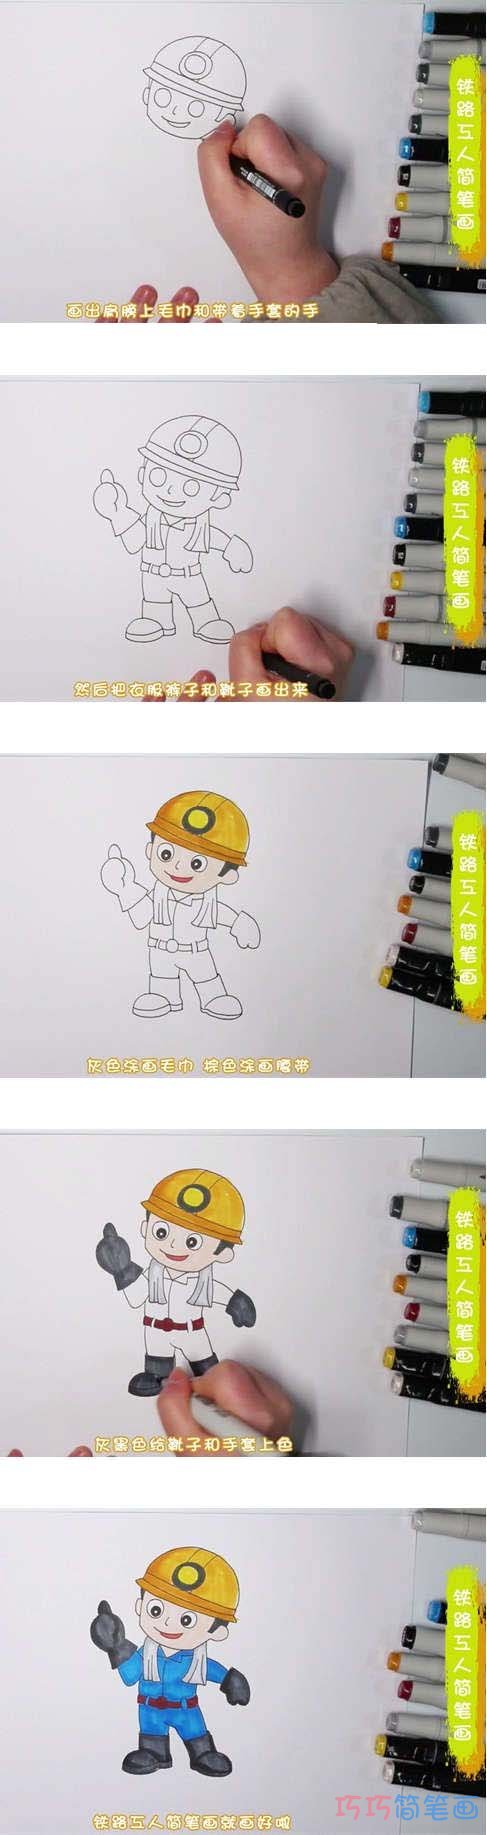 教你怎么画铁路工人简笔画步骤教程涂色